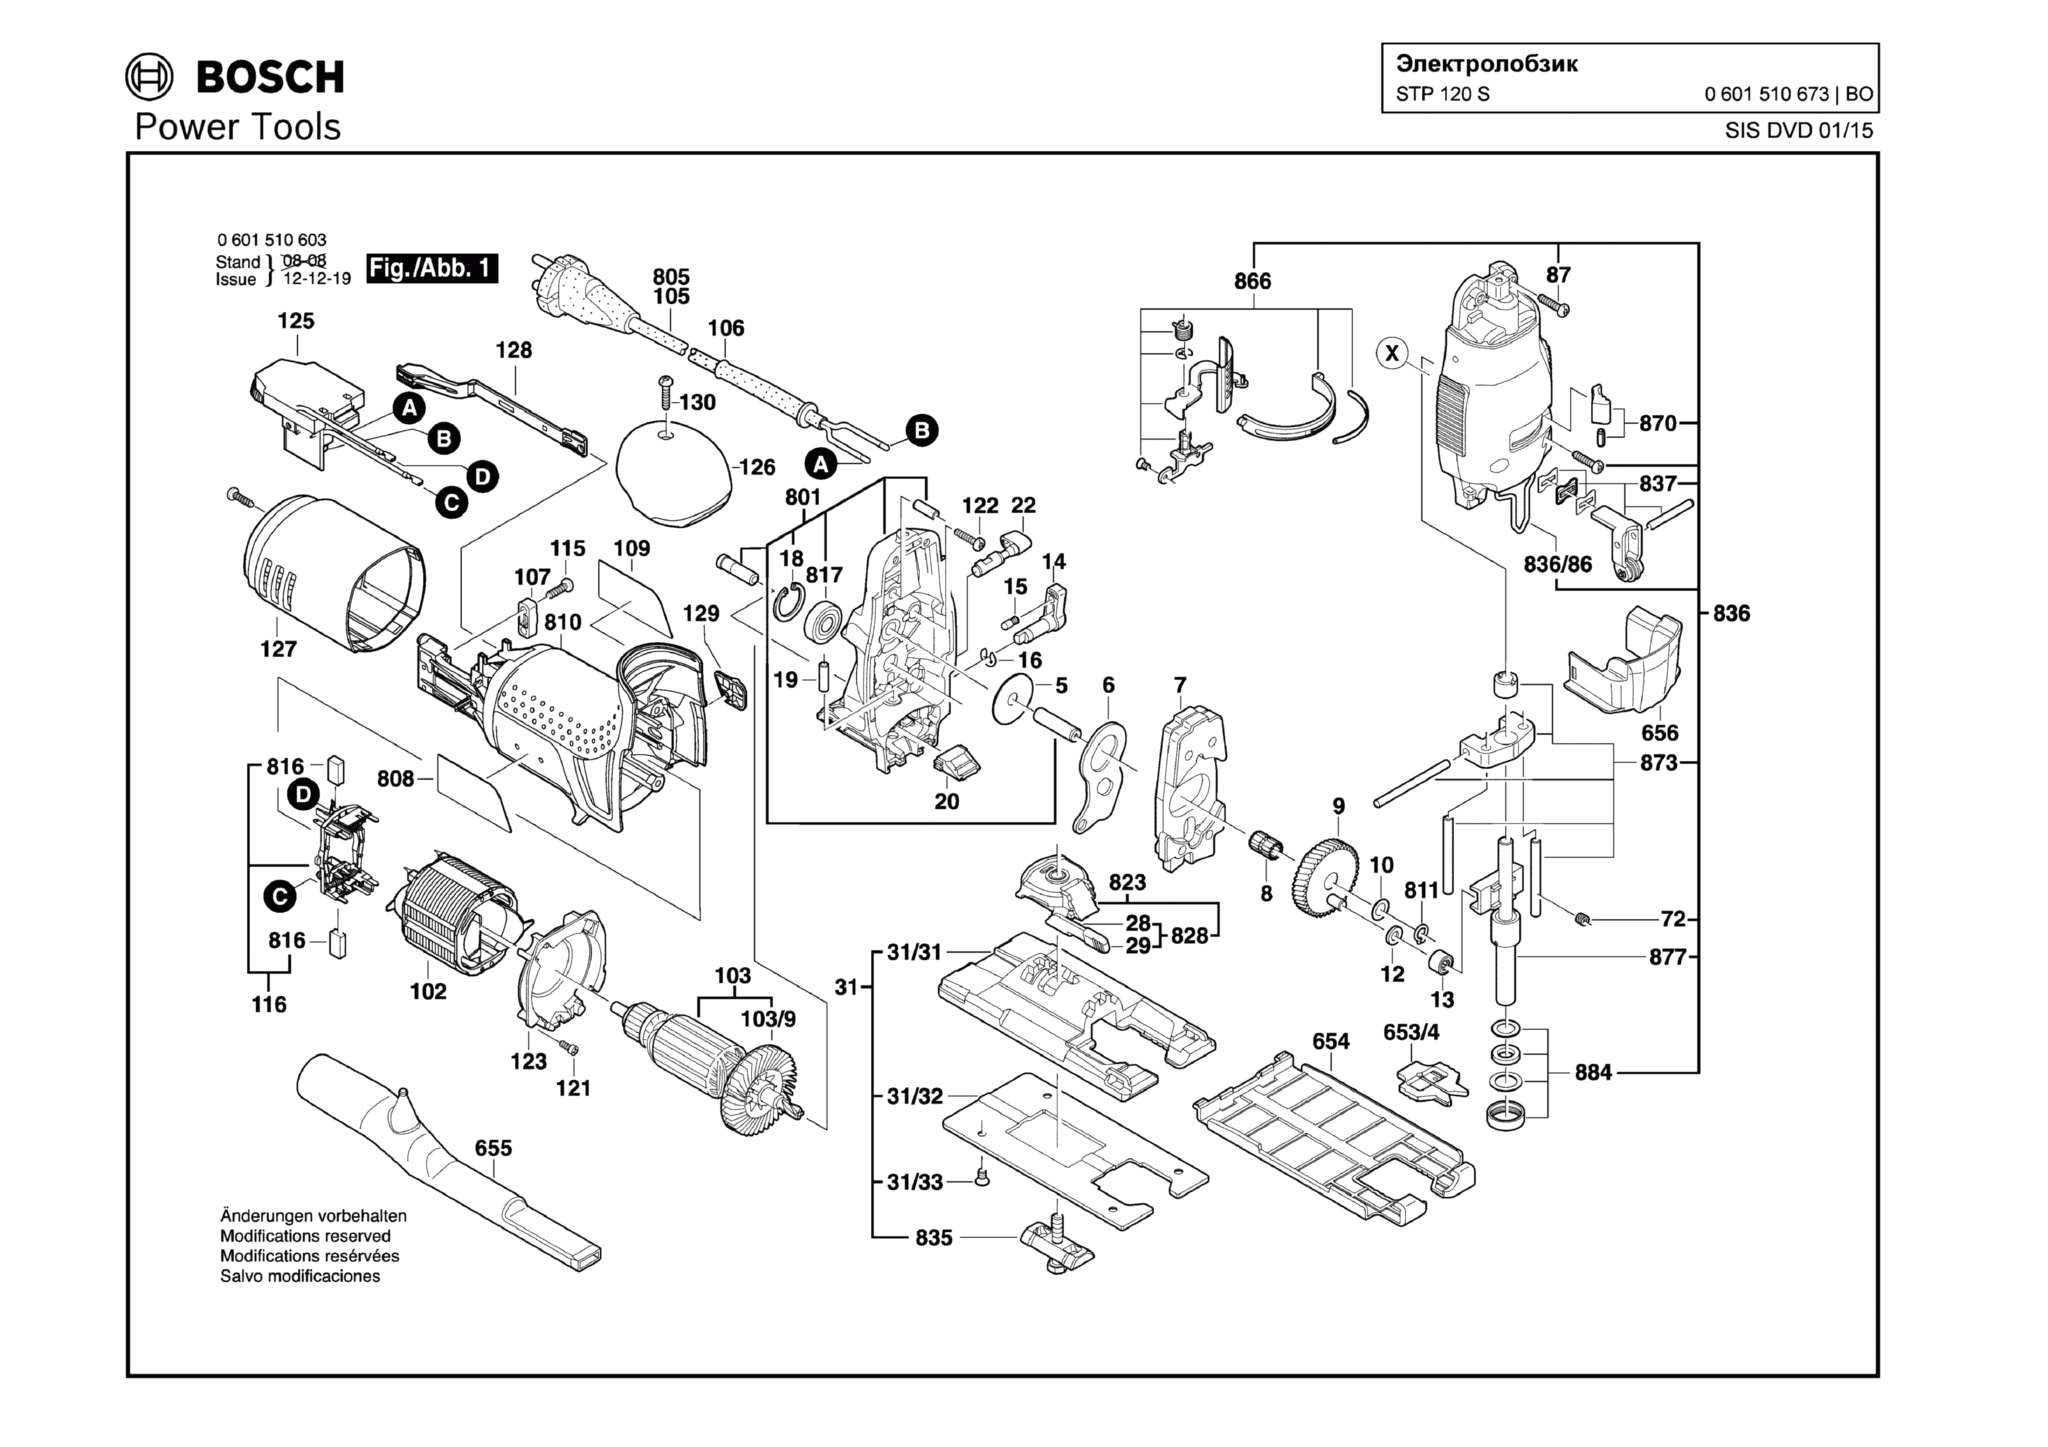 Запчасти, схема и деталировка Bosch STP 120 S (ТИП 0601510673)